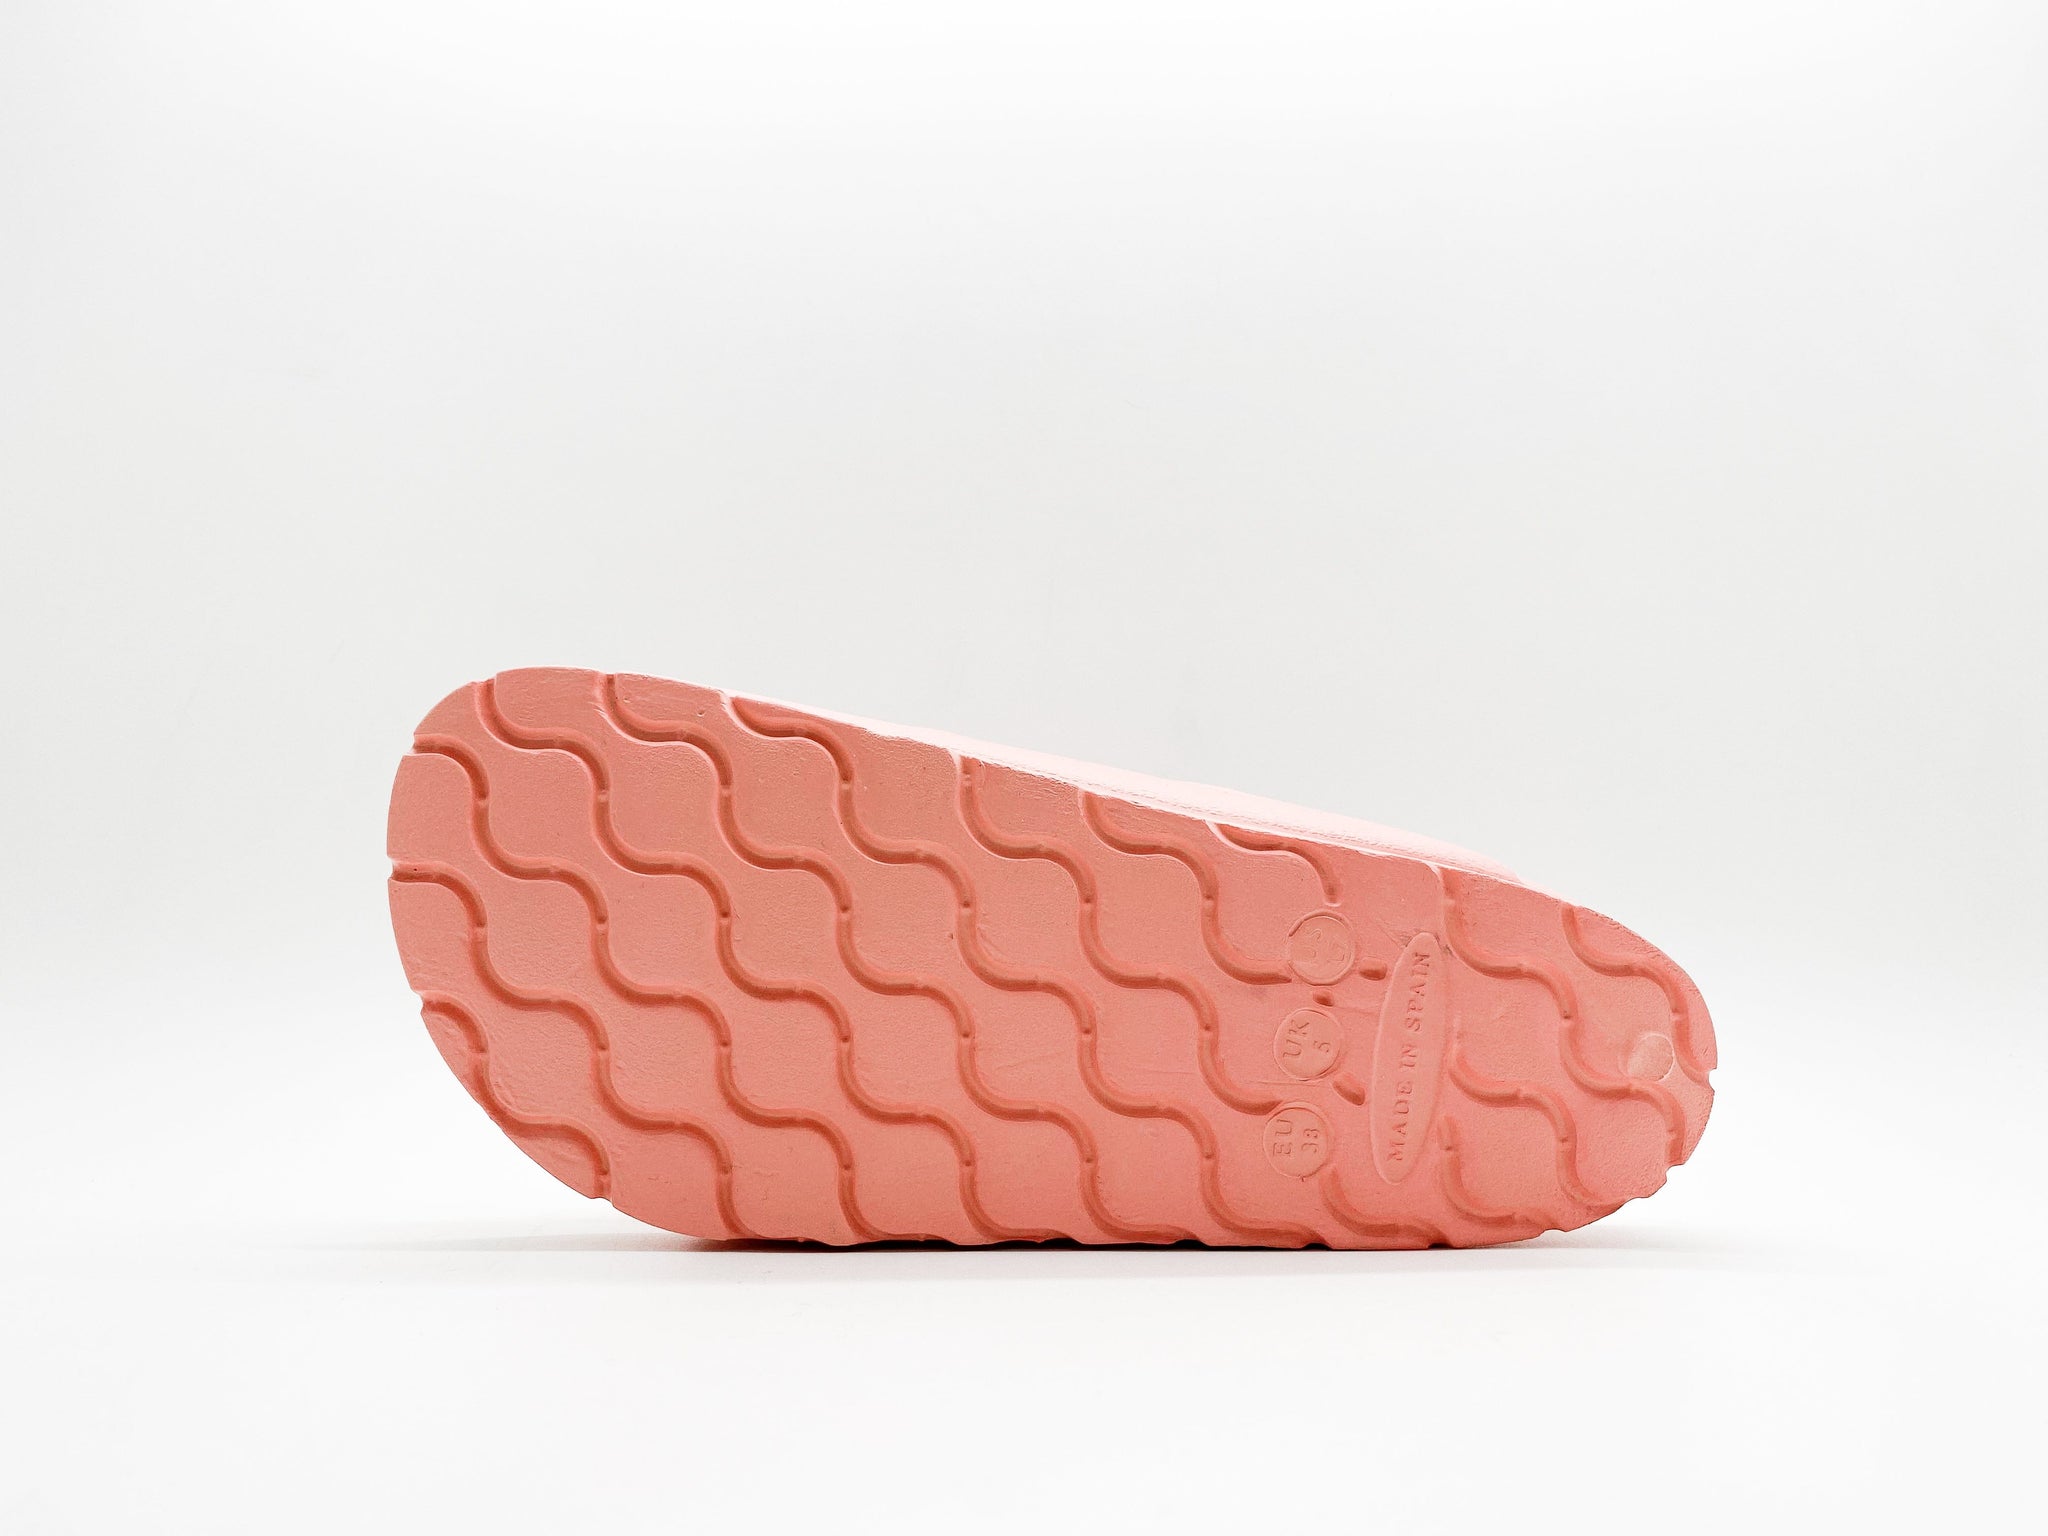 NAT 2 fodtøj thies 1856 ® Ecofoam Sandal laks bæredygtig mode etisk mode